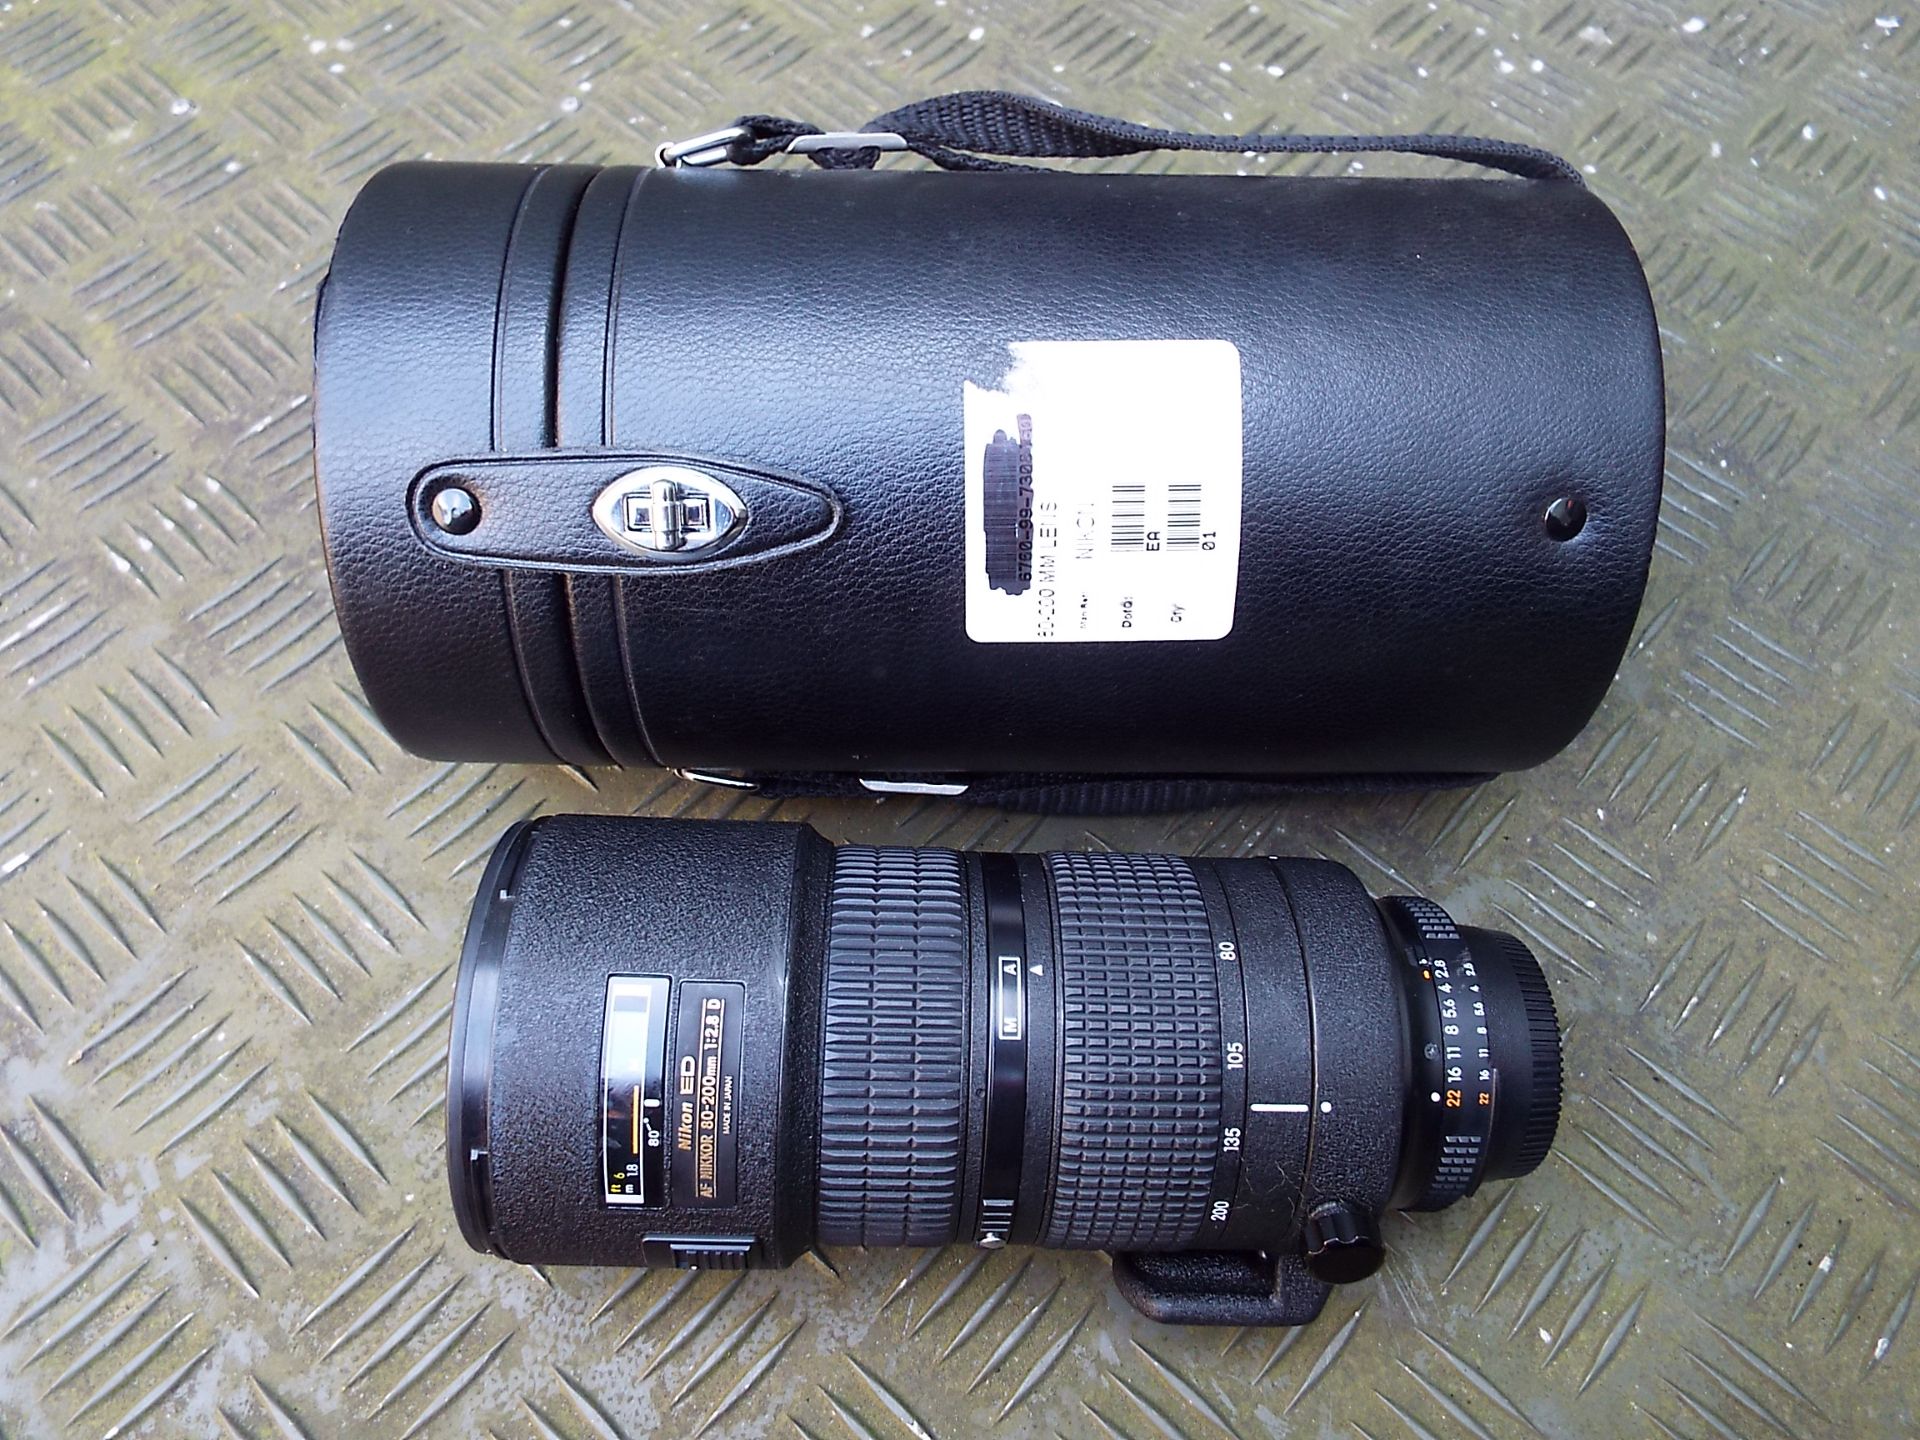 Nikon ED AF Nikkor 80-200mm 1:2.8 D Lense with Leather Carry Case